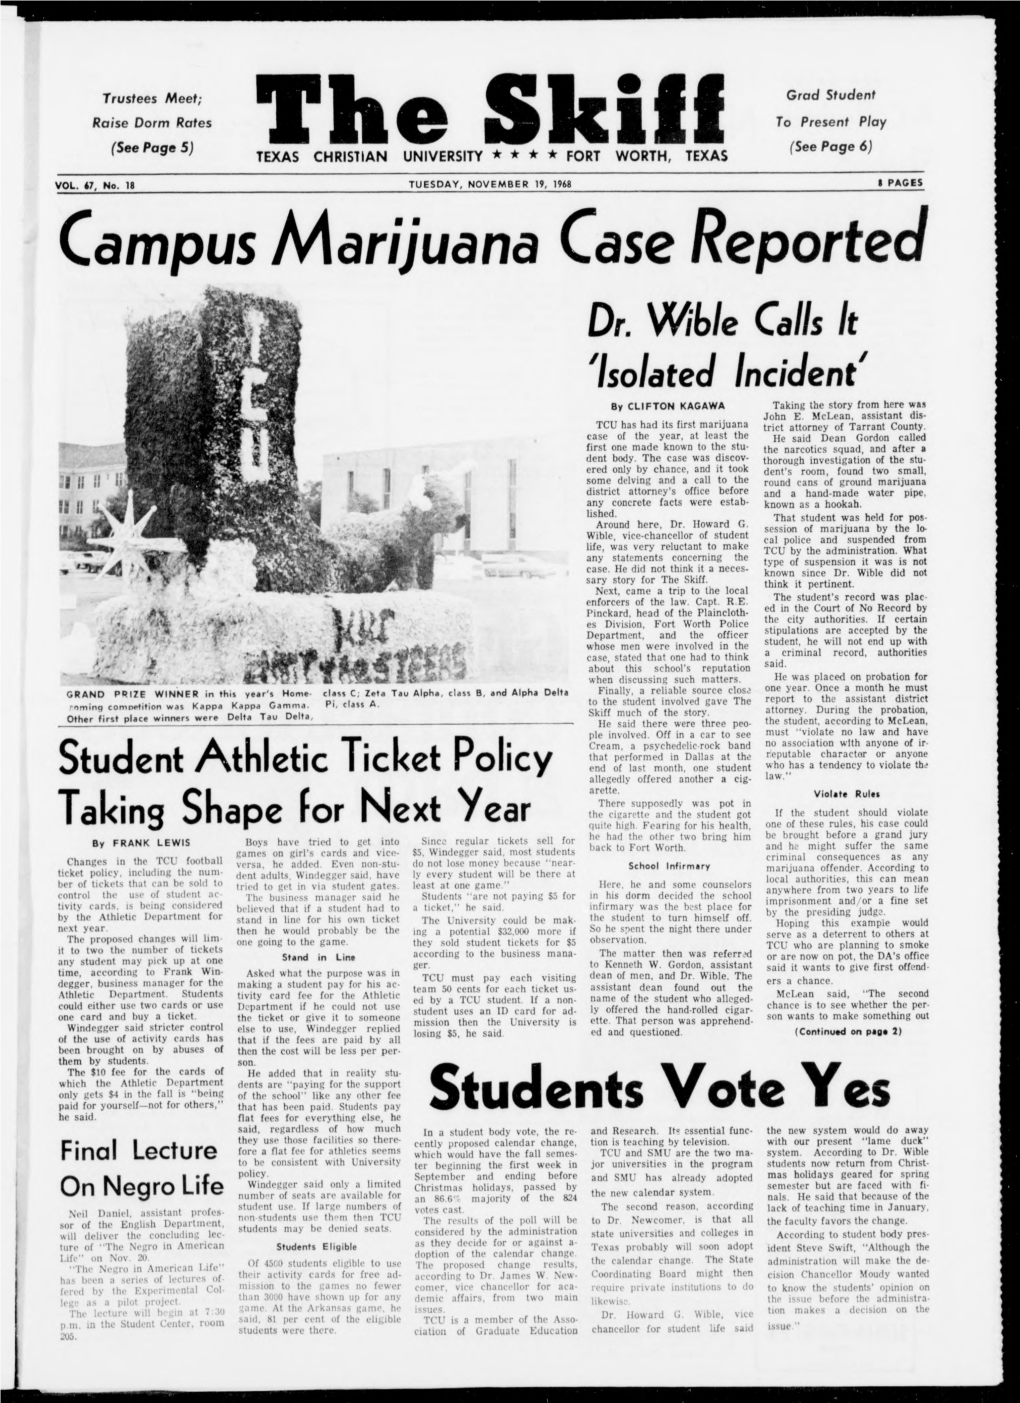 Campus Marijuana Case Reported Students Vote